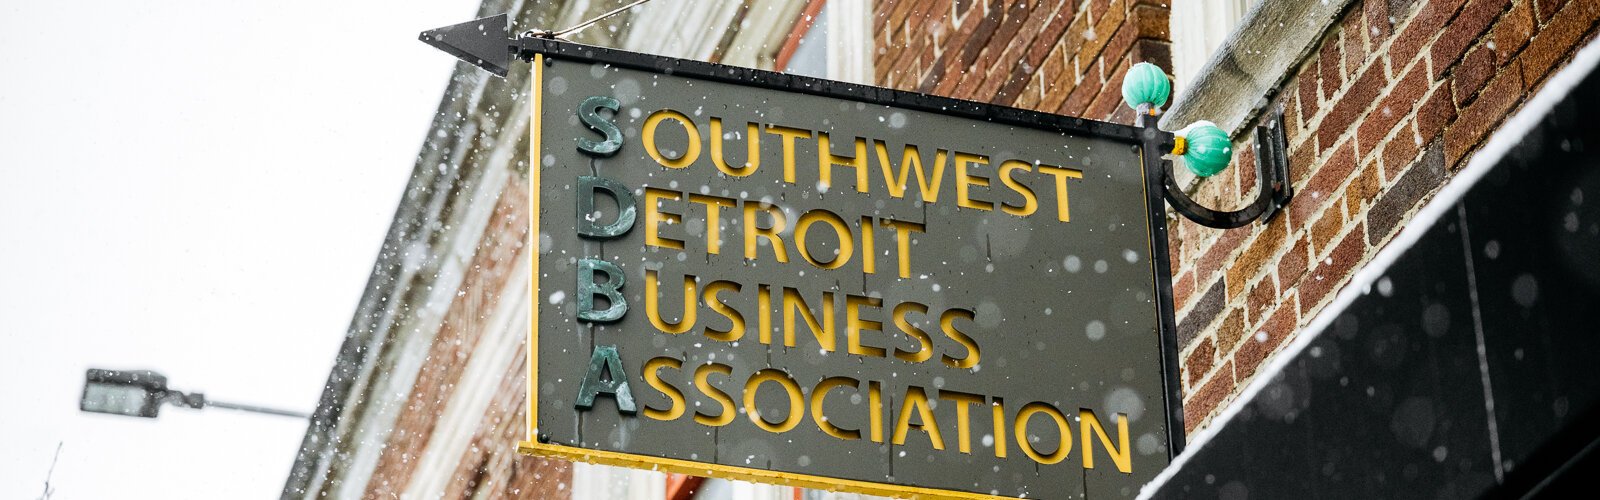 Southwest Detroit Business Association